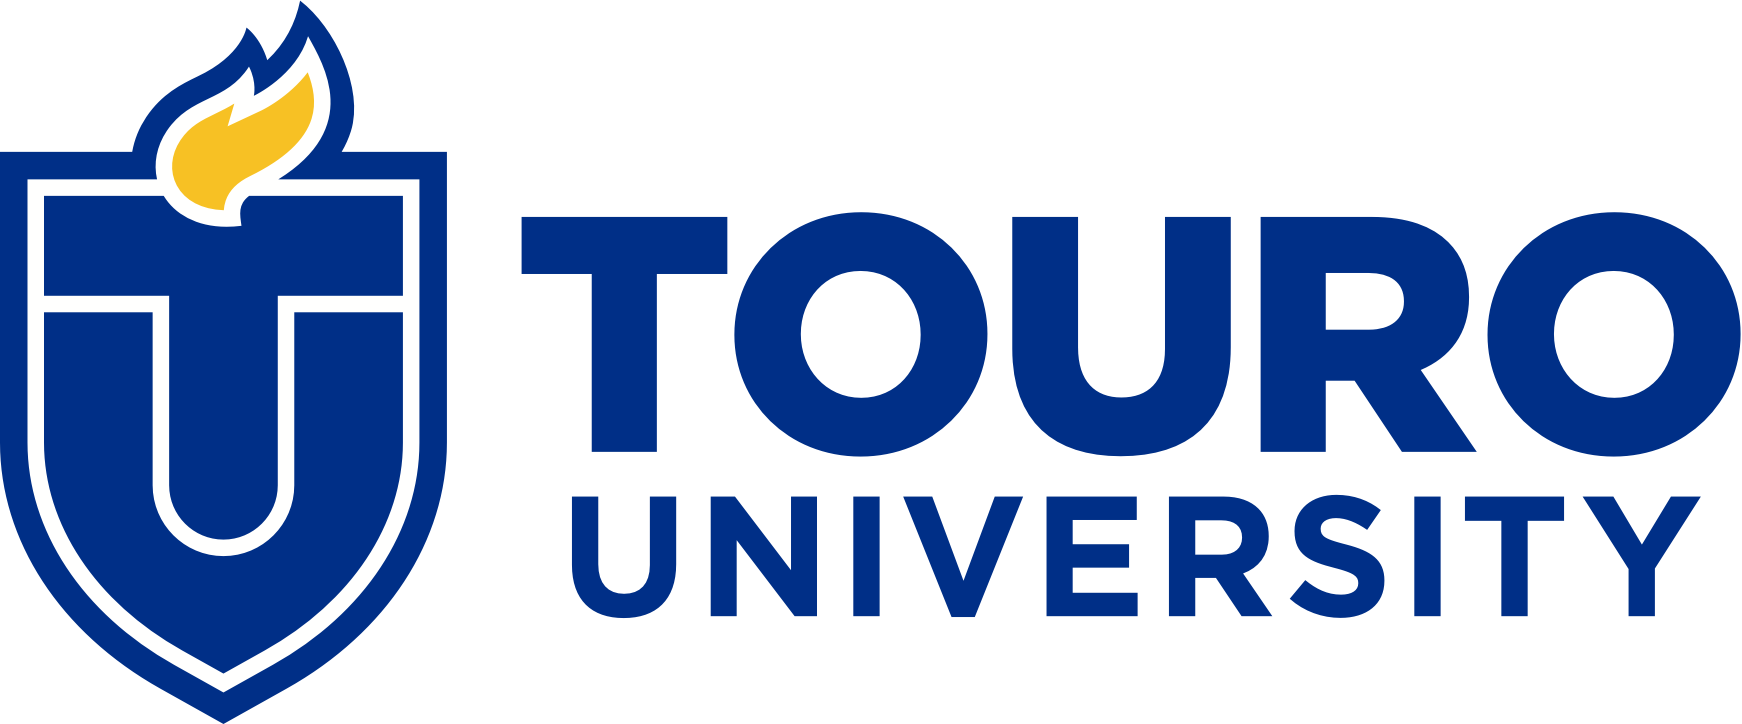 Touro University